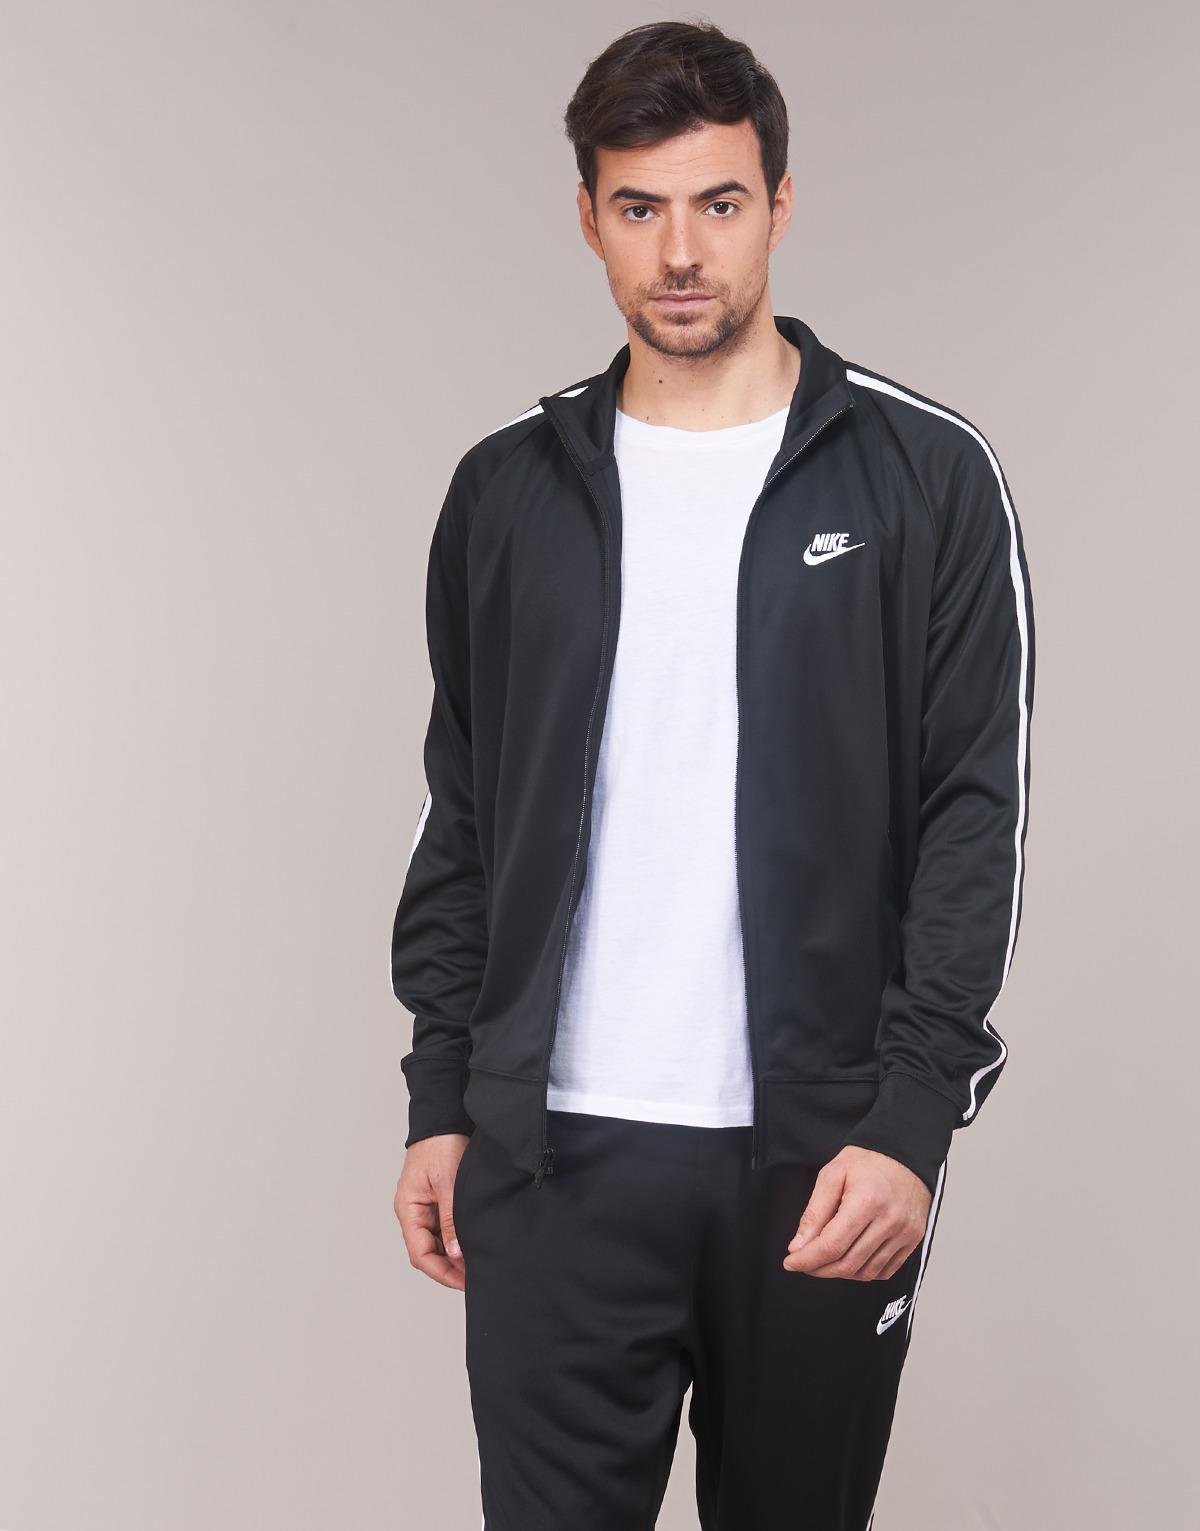 Nike Sportswear N99 Tracksuit Jacket in Black for Men - Lyst